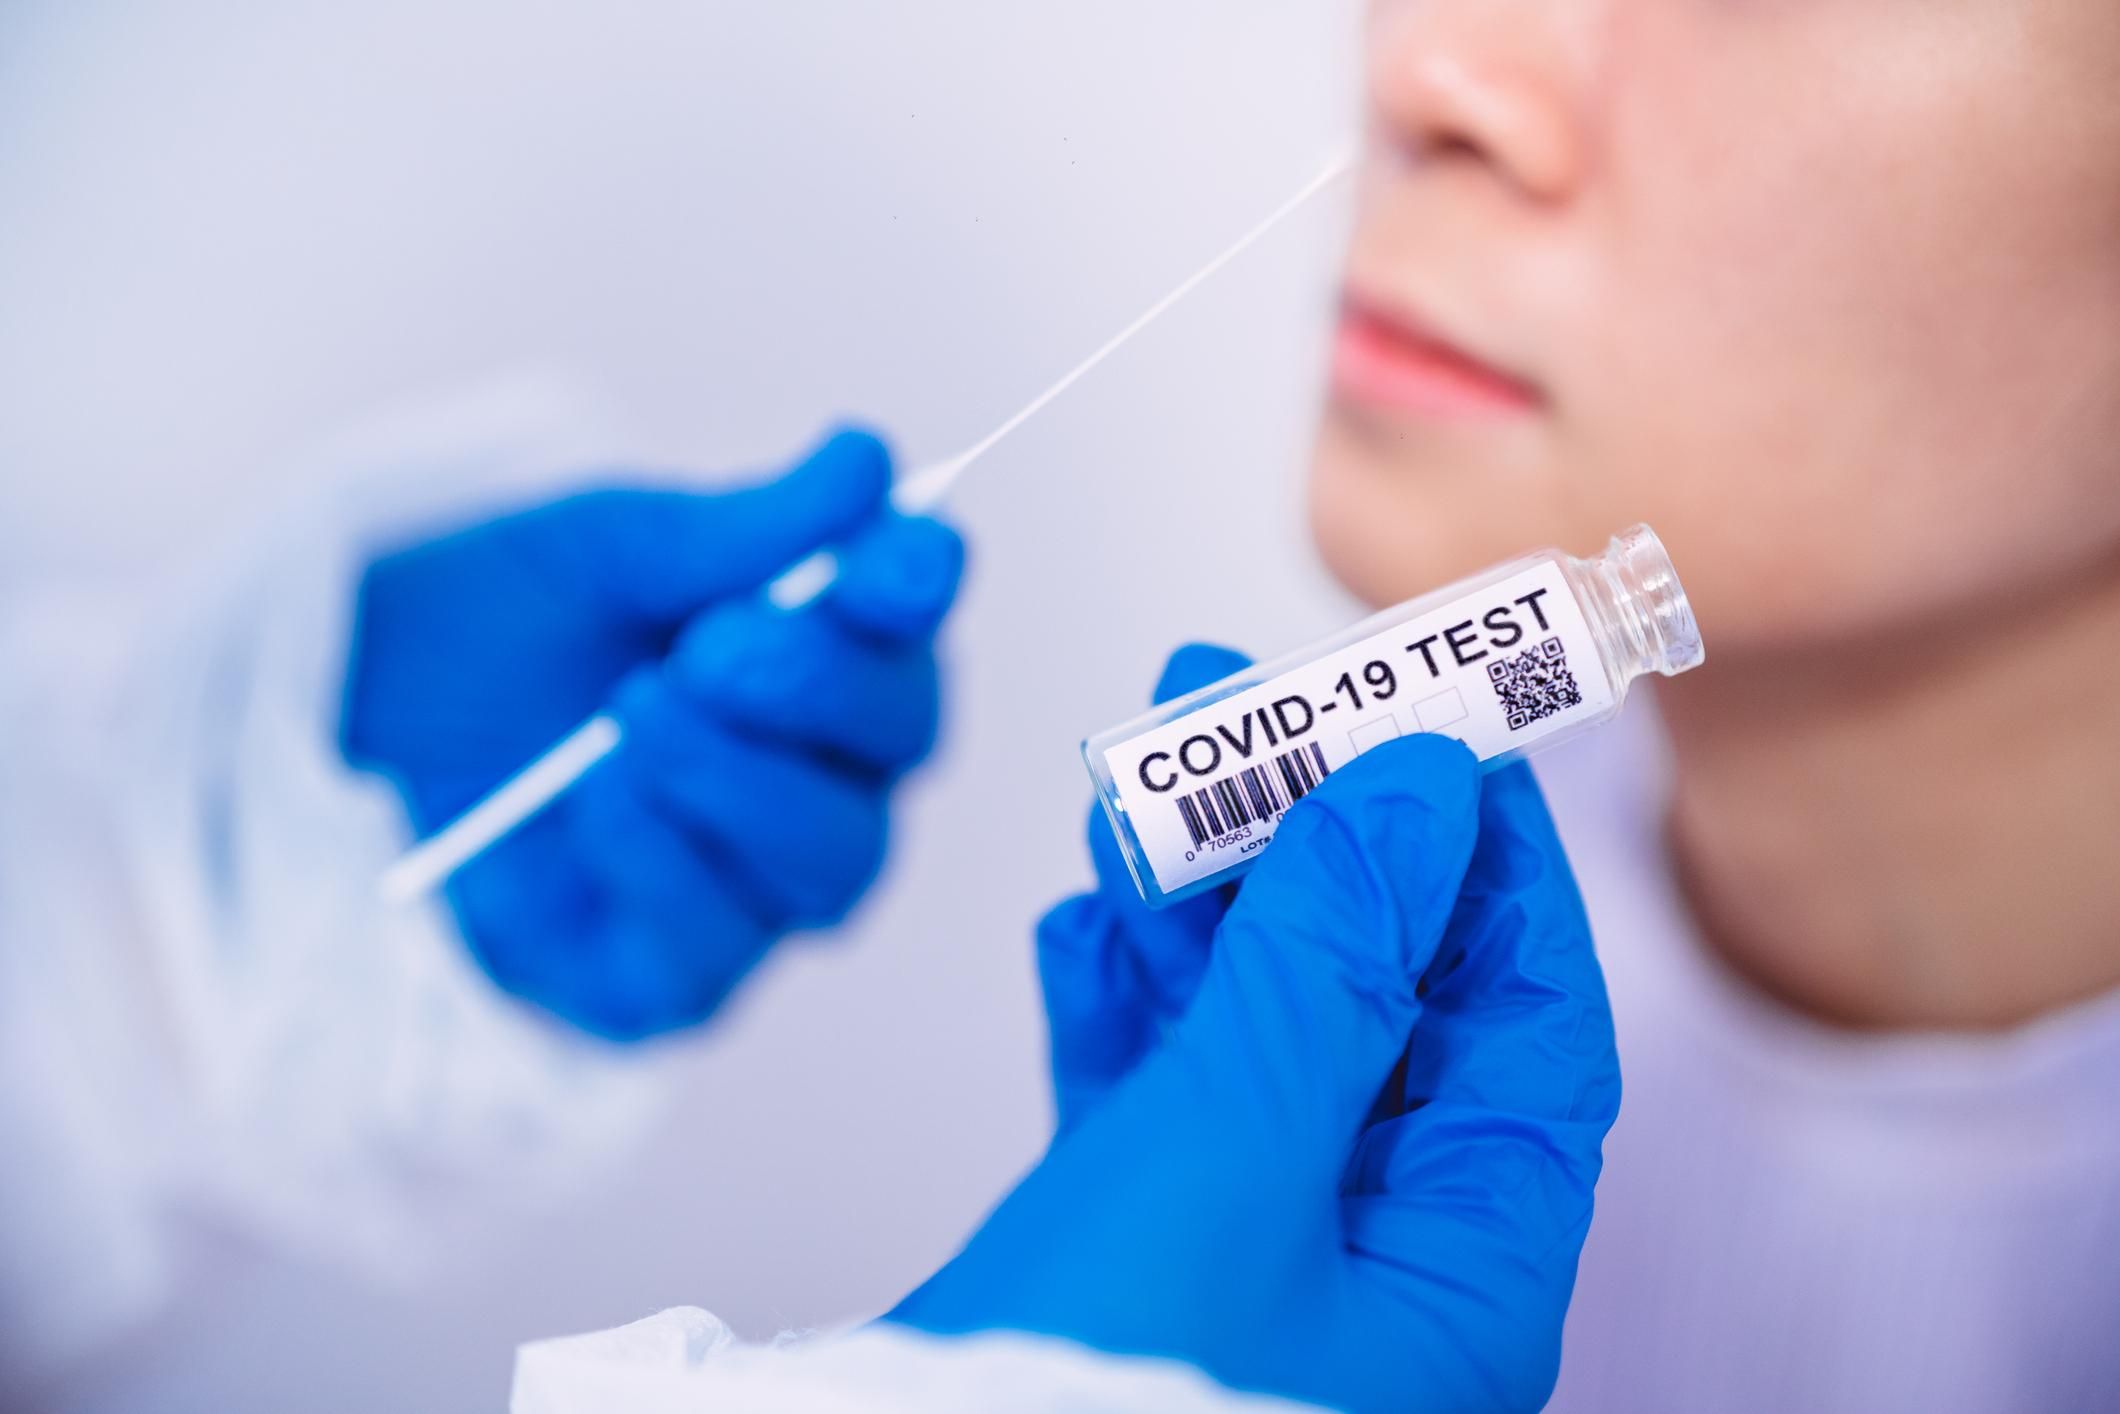 Після самоізоляції не потрібно здавати тест на коронавірус: оновлений протокол від МОЗ